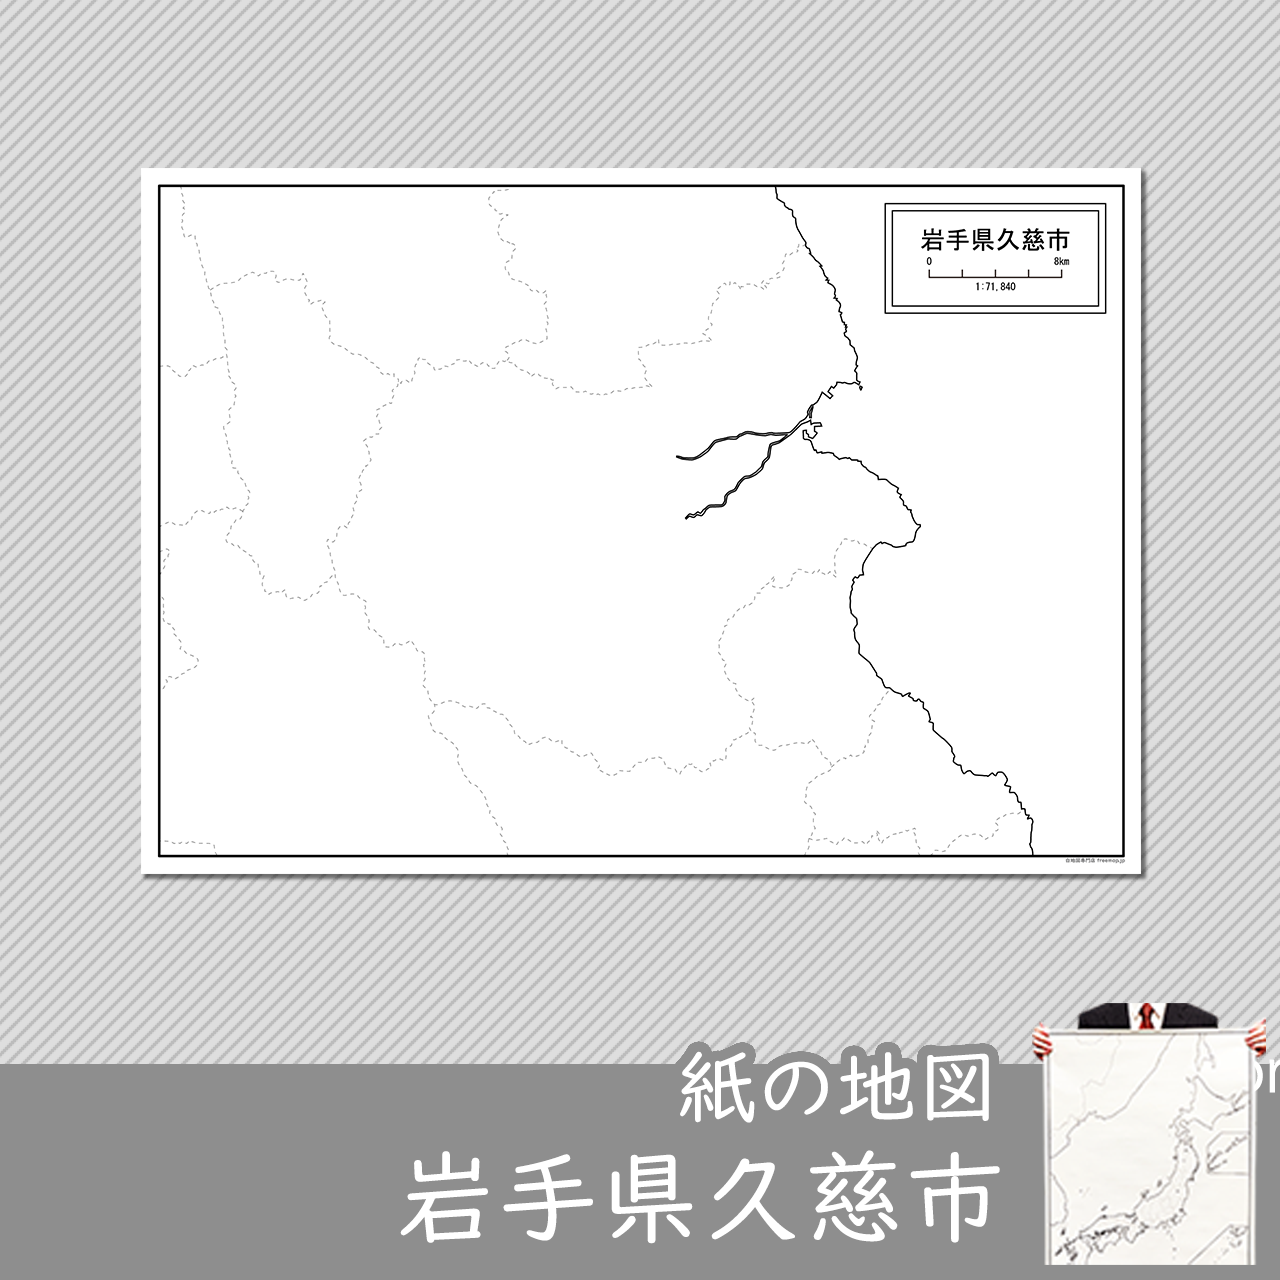 久慈市の紙の白地図のサムネイル